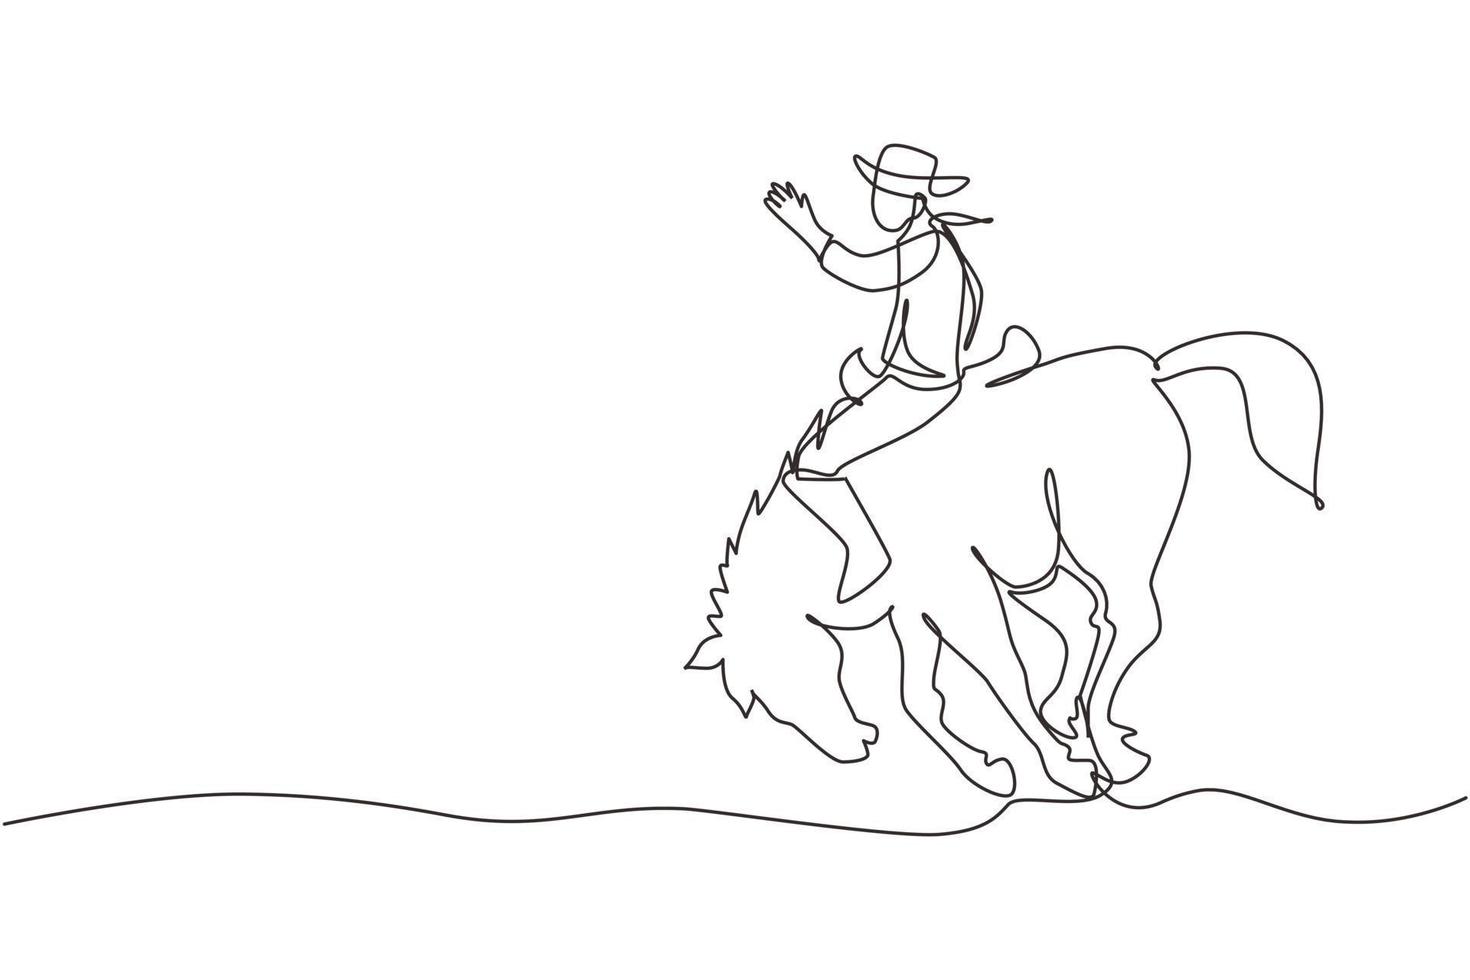 contínuo um desenho de linha cowboy montando bucking bronco ao pôr do sol. cowboy de rodeio no rancho de cavalos. corrida de cavalos selvagens. cowboy domar cavalo selvagem no rodeio. ilustração gráfica de vetor de desenho de linha única